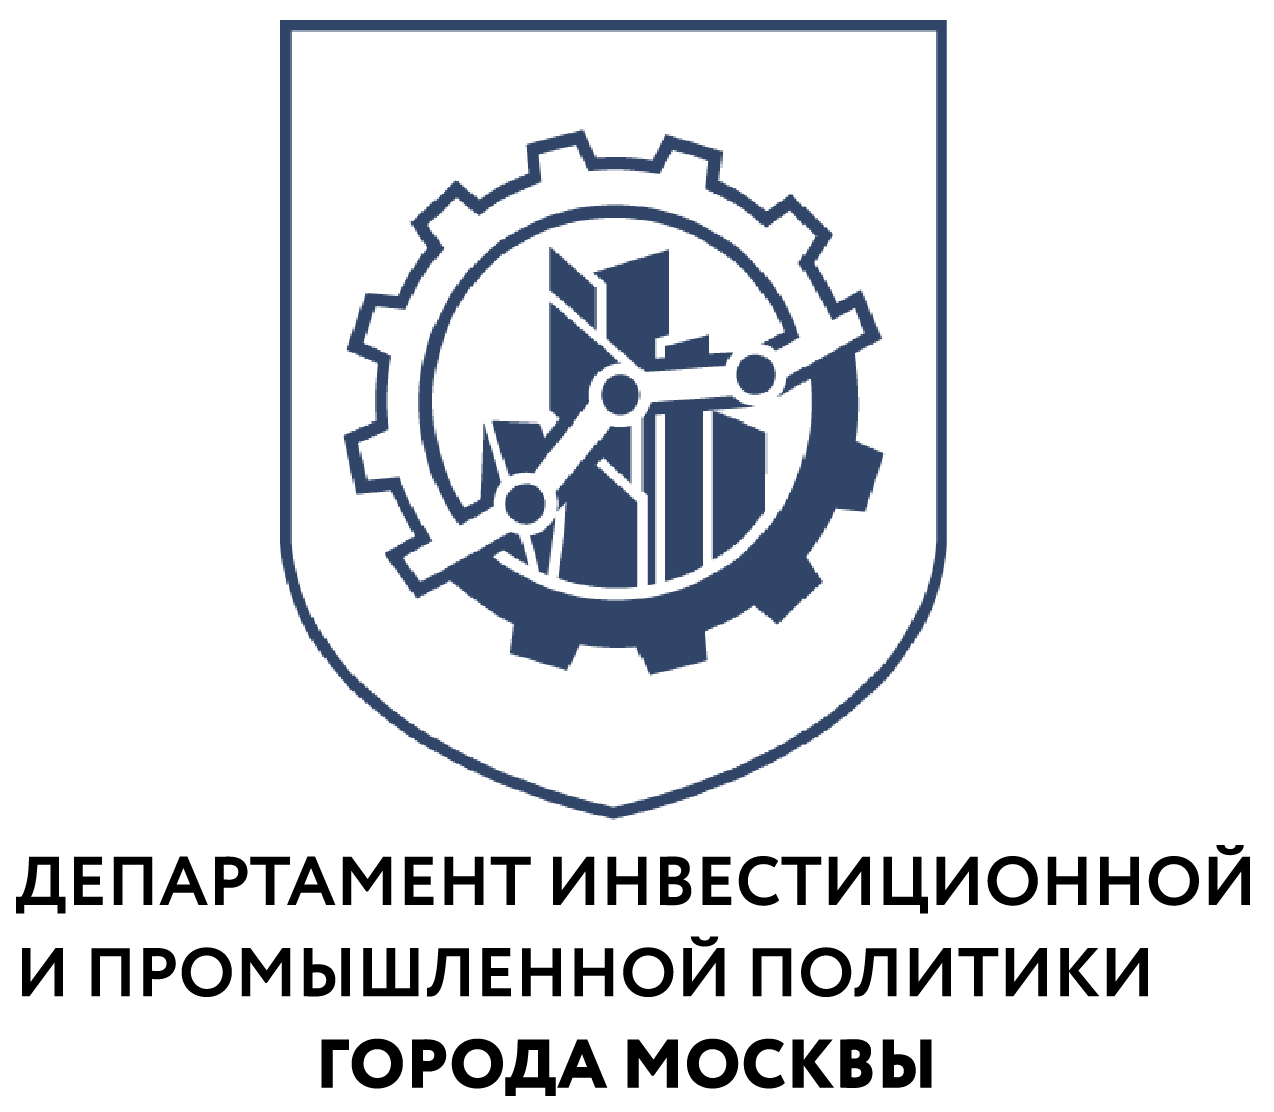 В Москве растет производство оборудования для промышленности и коммунального хозяйства - фото 1